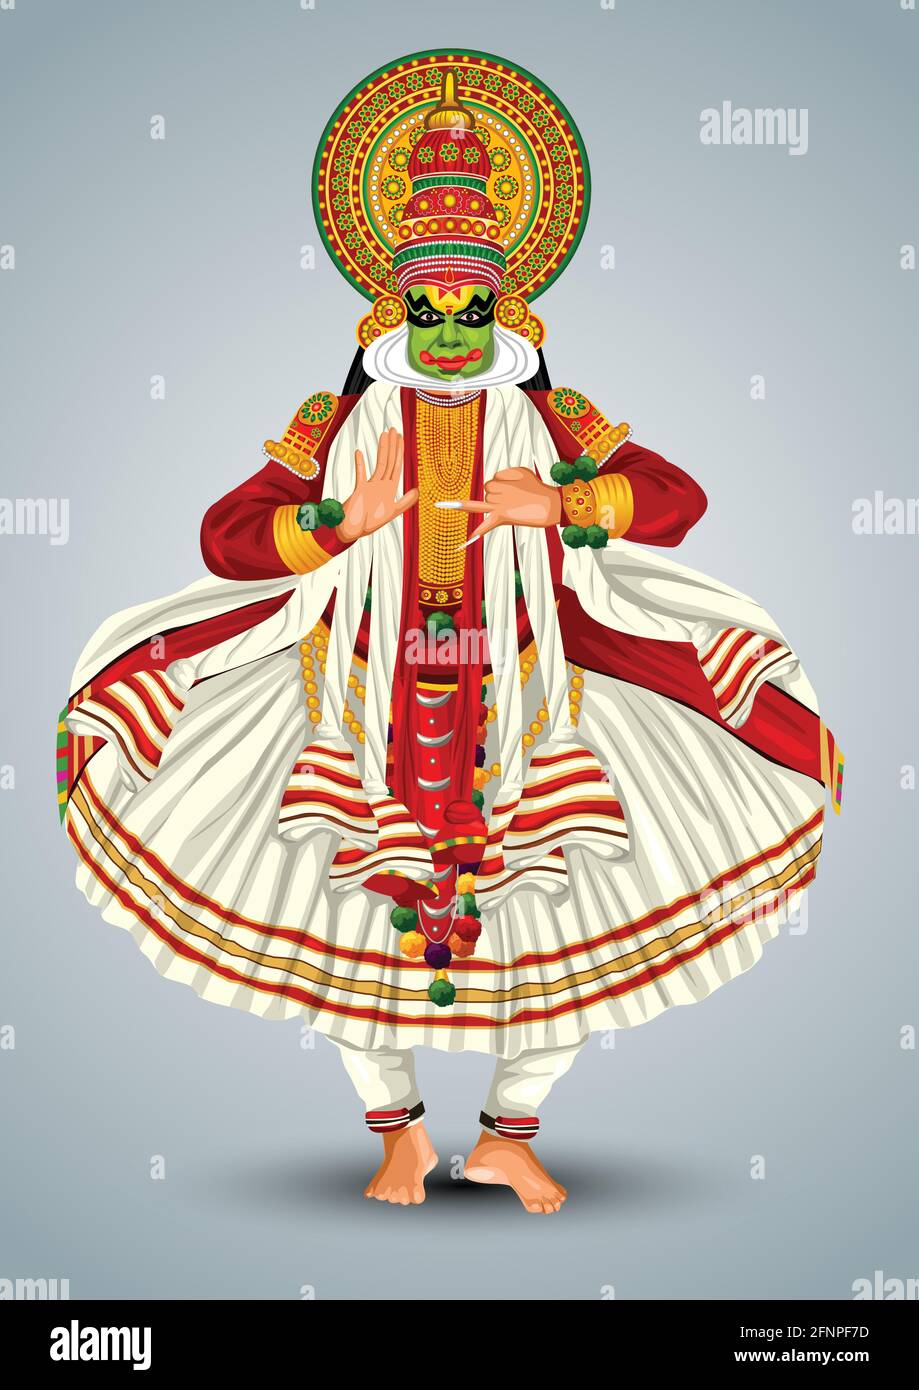 Kerala danse traditionnelle kathakali dessin vectoriel pleine taille Illustration de Vecteur